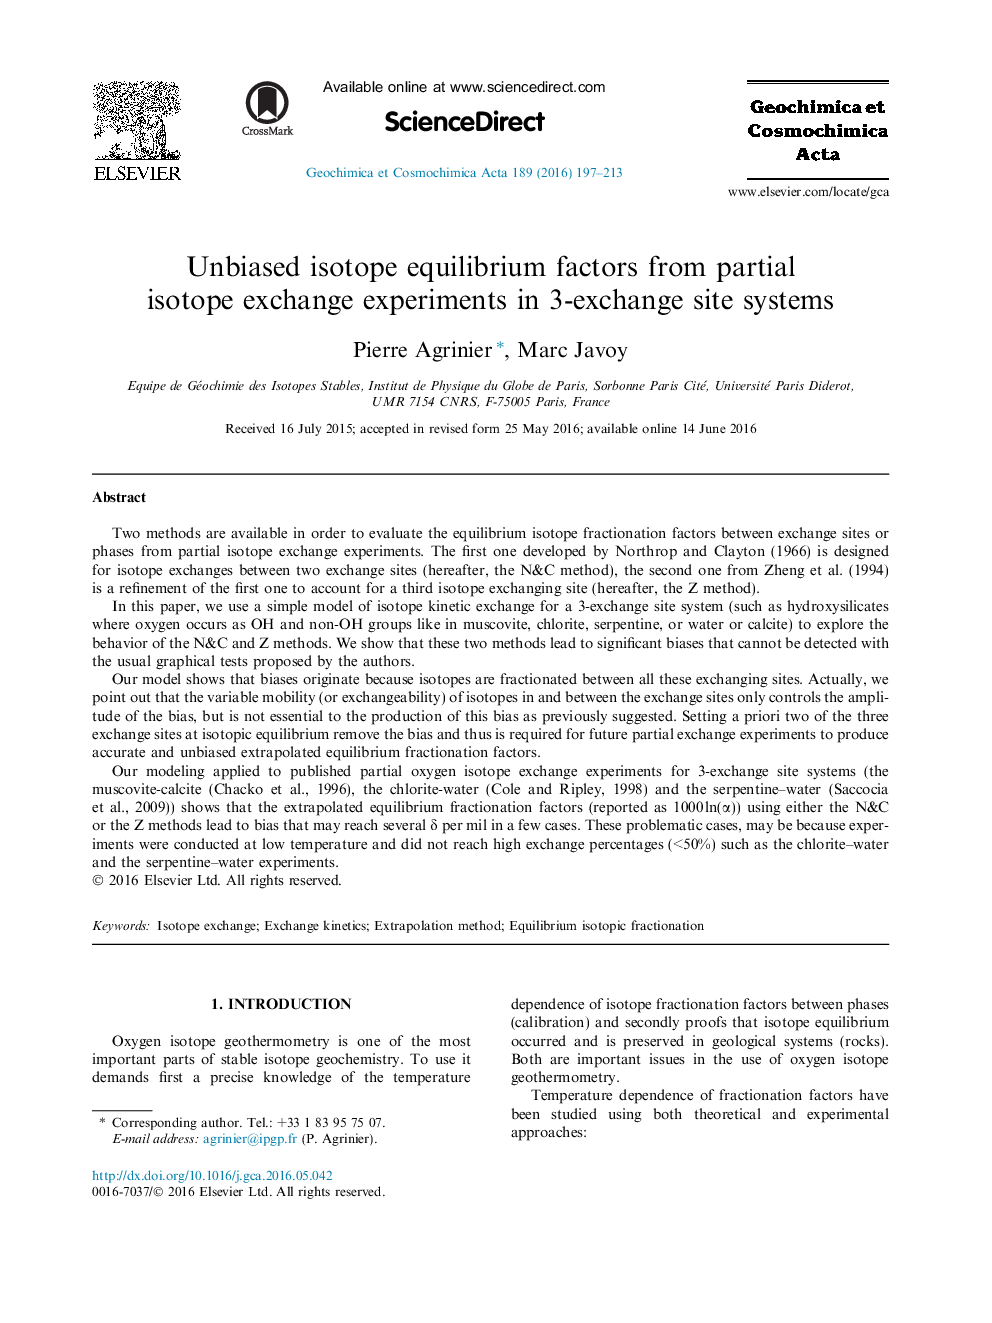 فاکتورهای تعادلی ایزوتوپ بی طرف از آزمایشات تبادل ایزوتوپ جزئی در سیستم های 3-مبادله سایت 